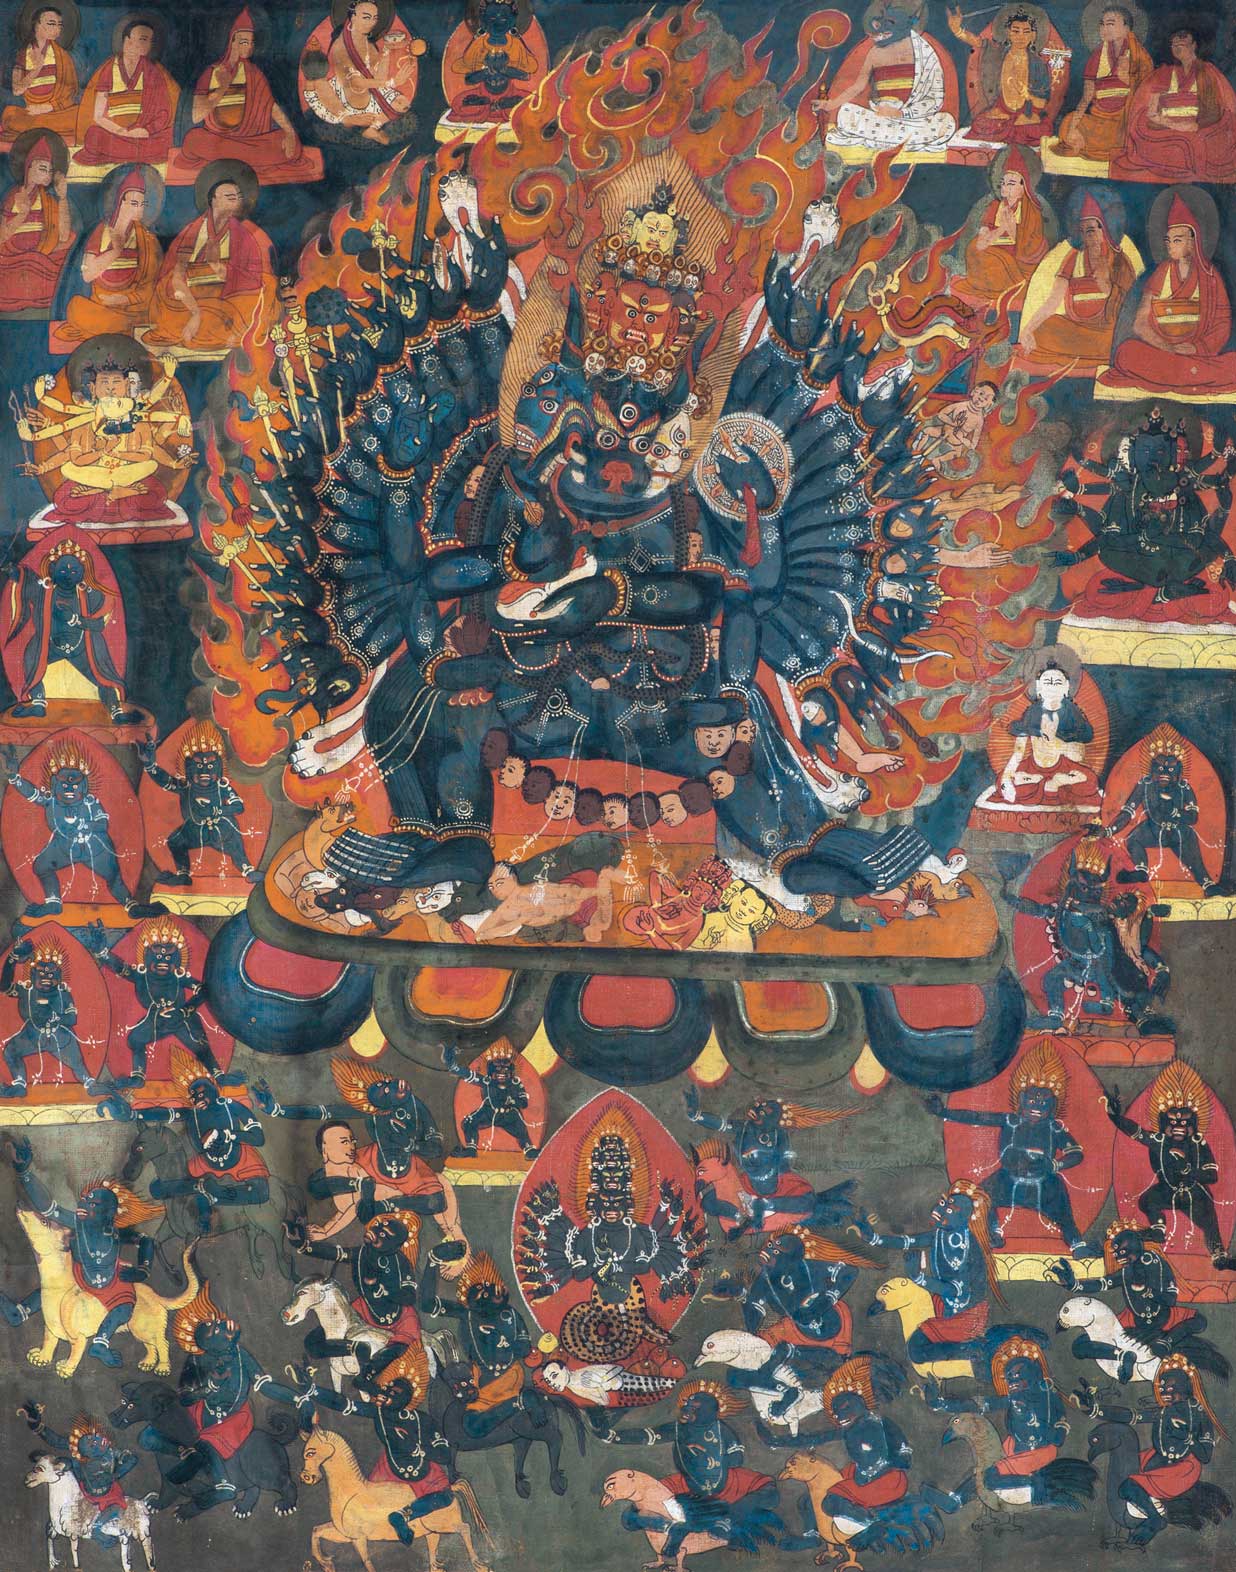 秋季艺术品拍卖会"作意"——佛教艺术专场十八世纪 大威德金刚预展